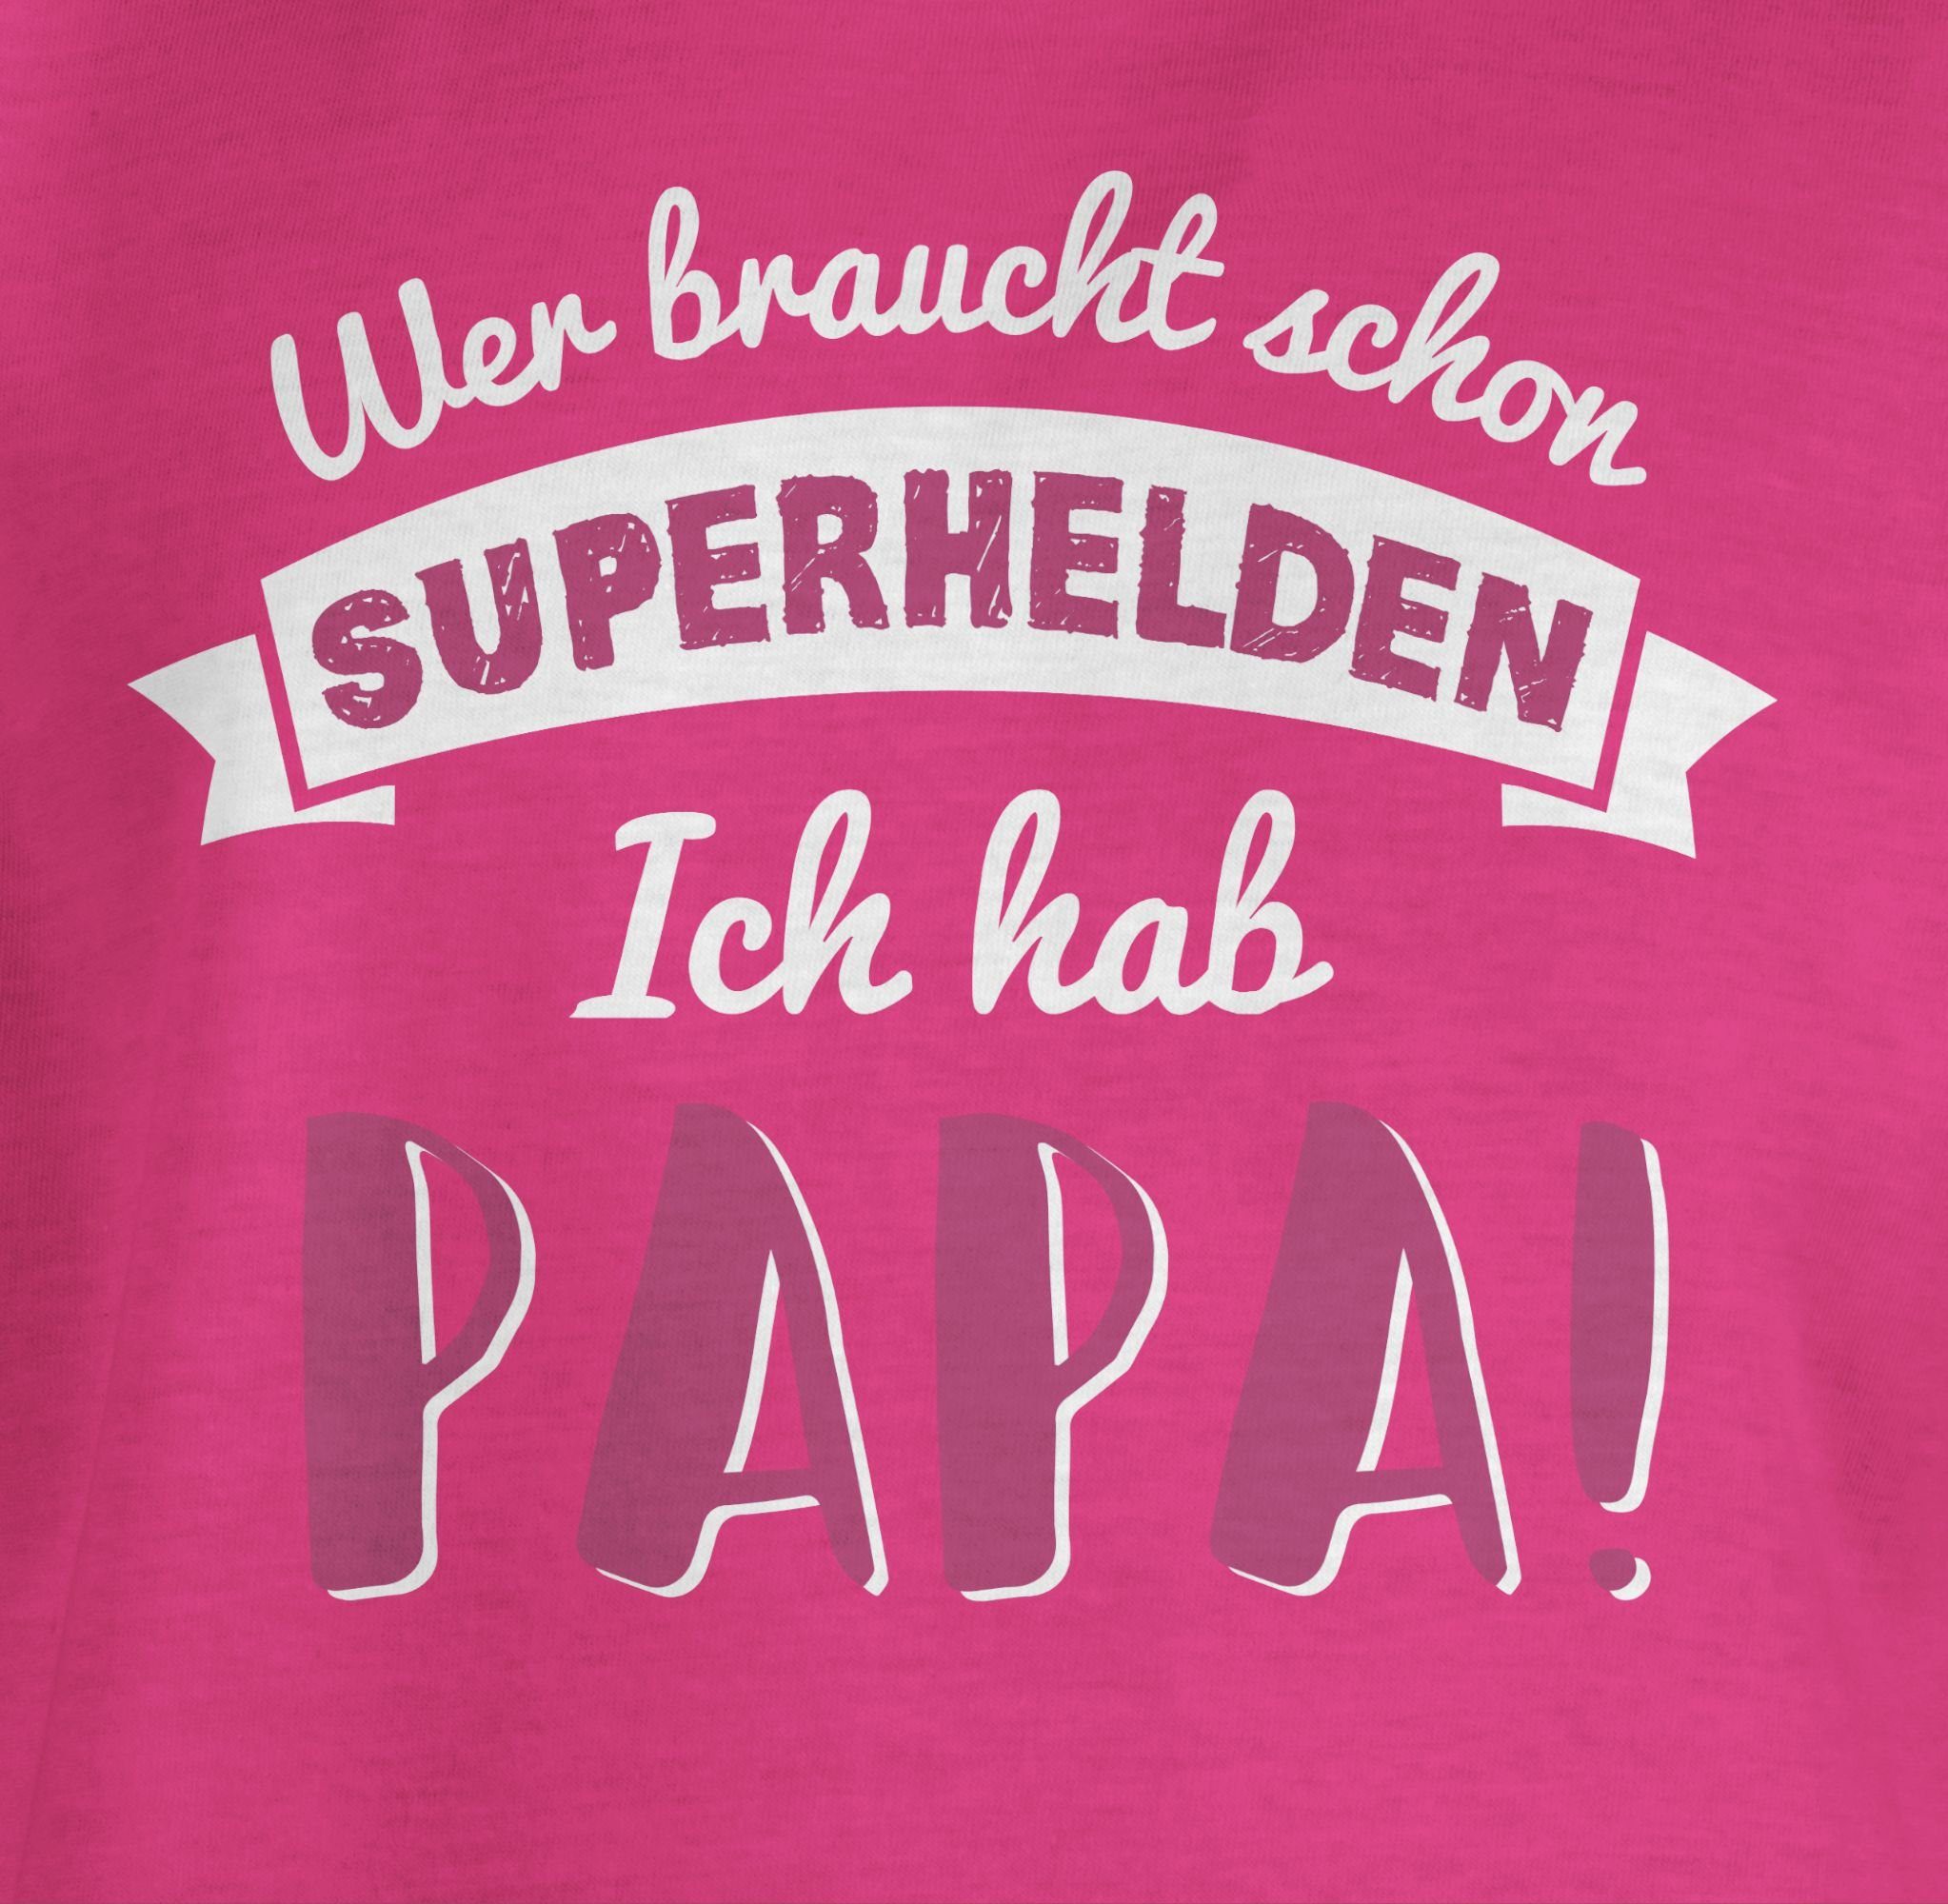 Shirtracer T-Shirt Wer für Superhelden Papa Geschenk schon Fuchsia rosa 1 Papa Vatertag braucht hab ich